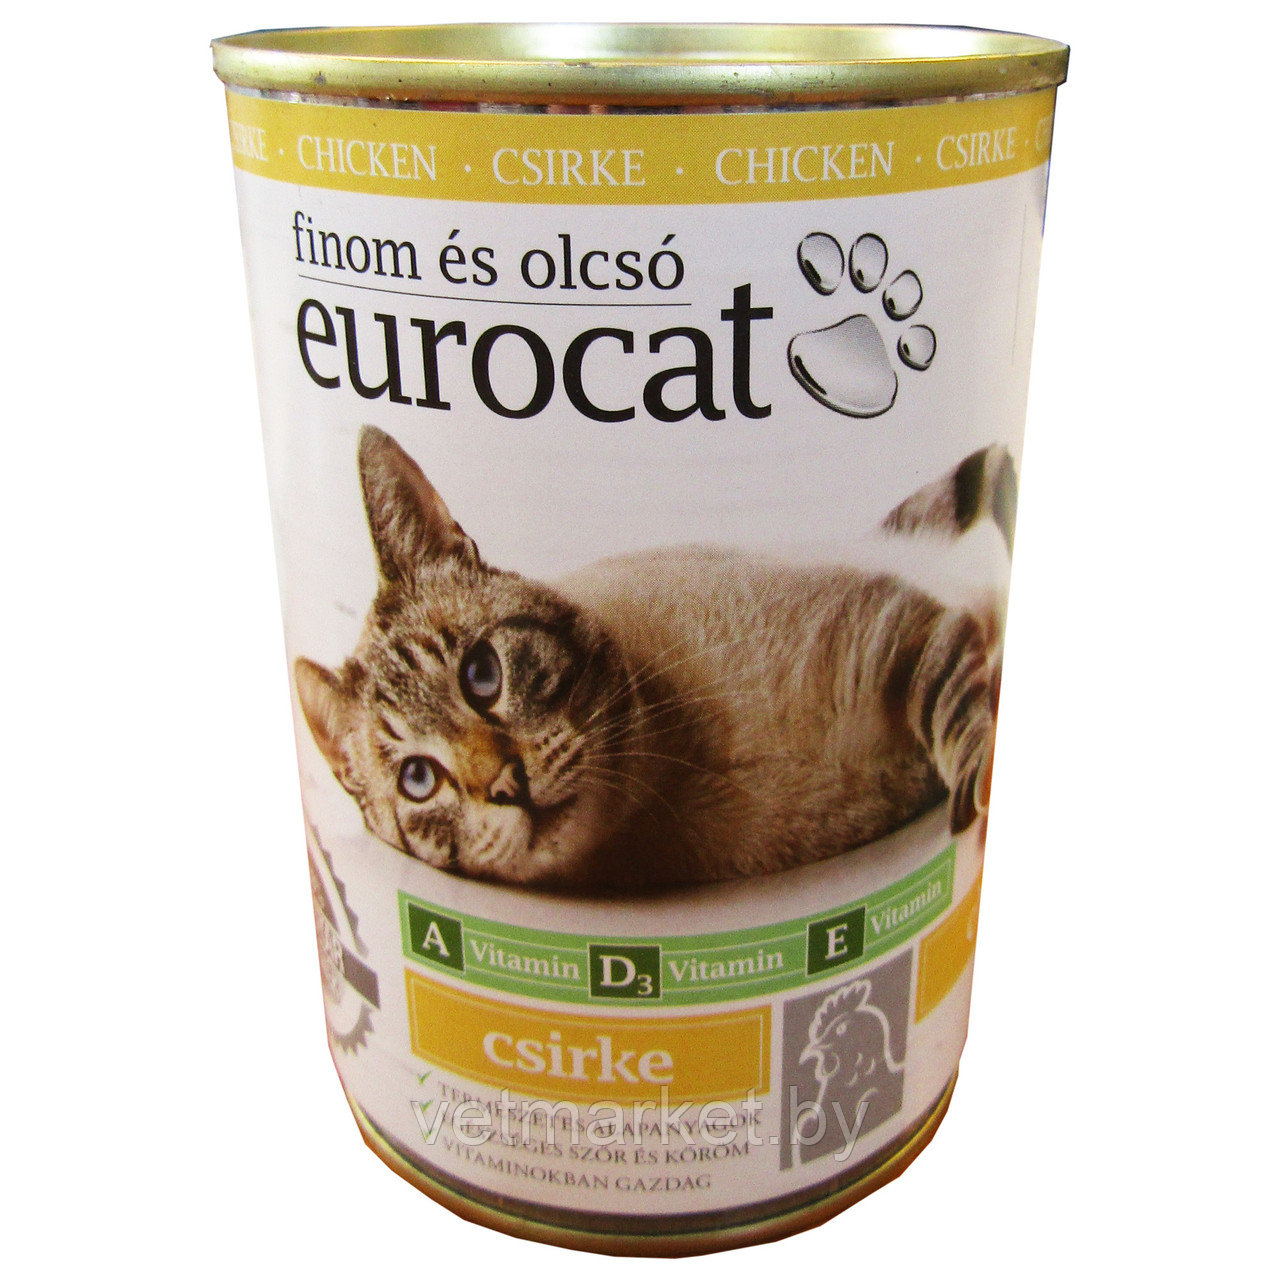 Eurocat консервы для кошек с курицей 415 г.